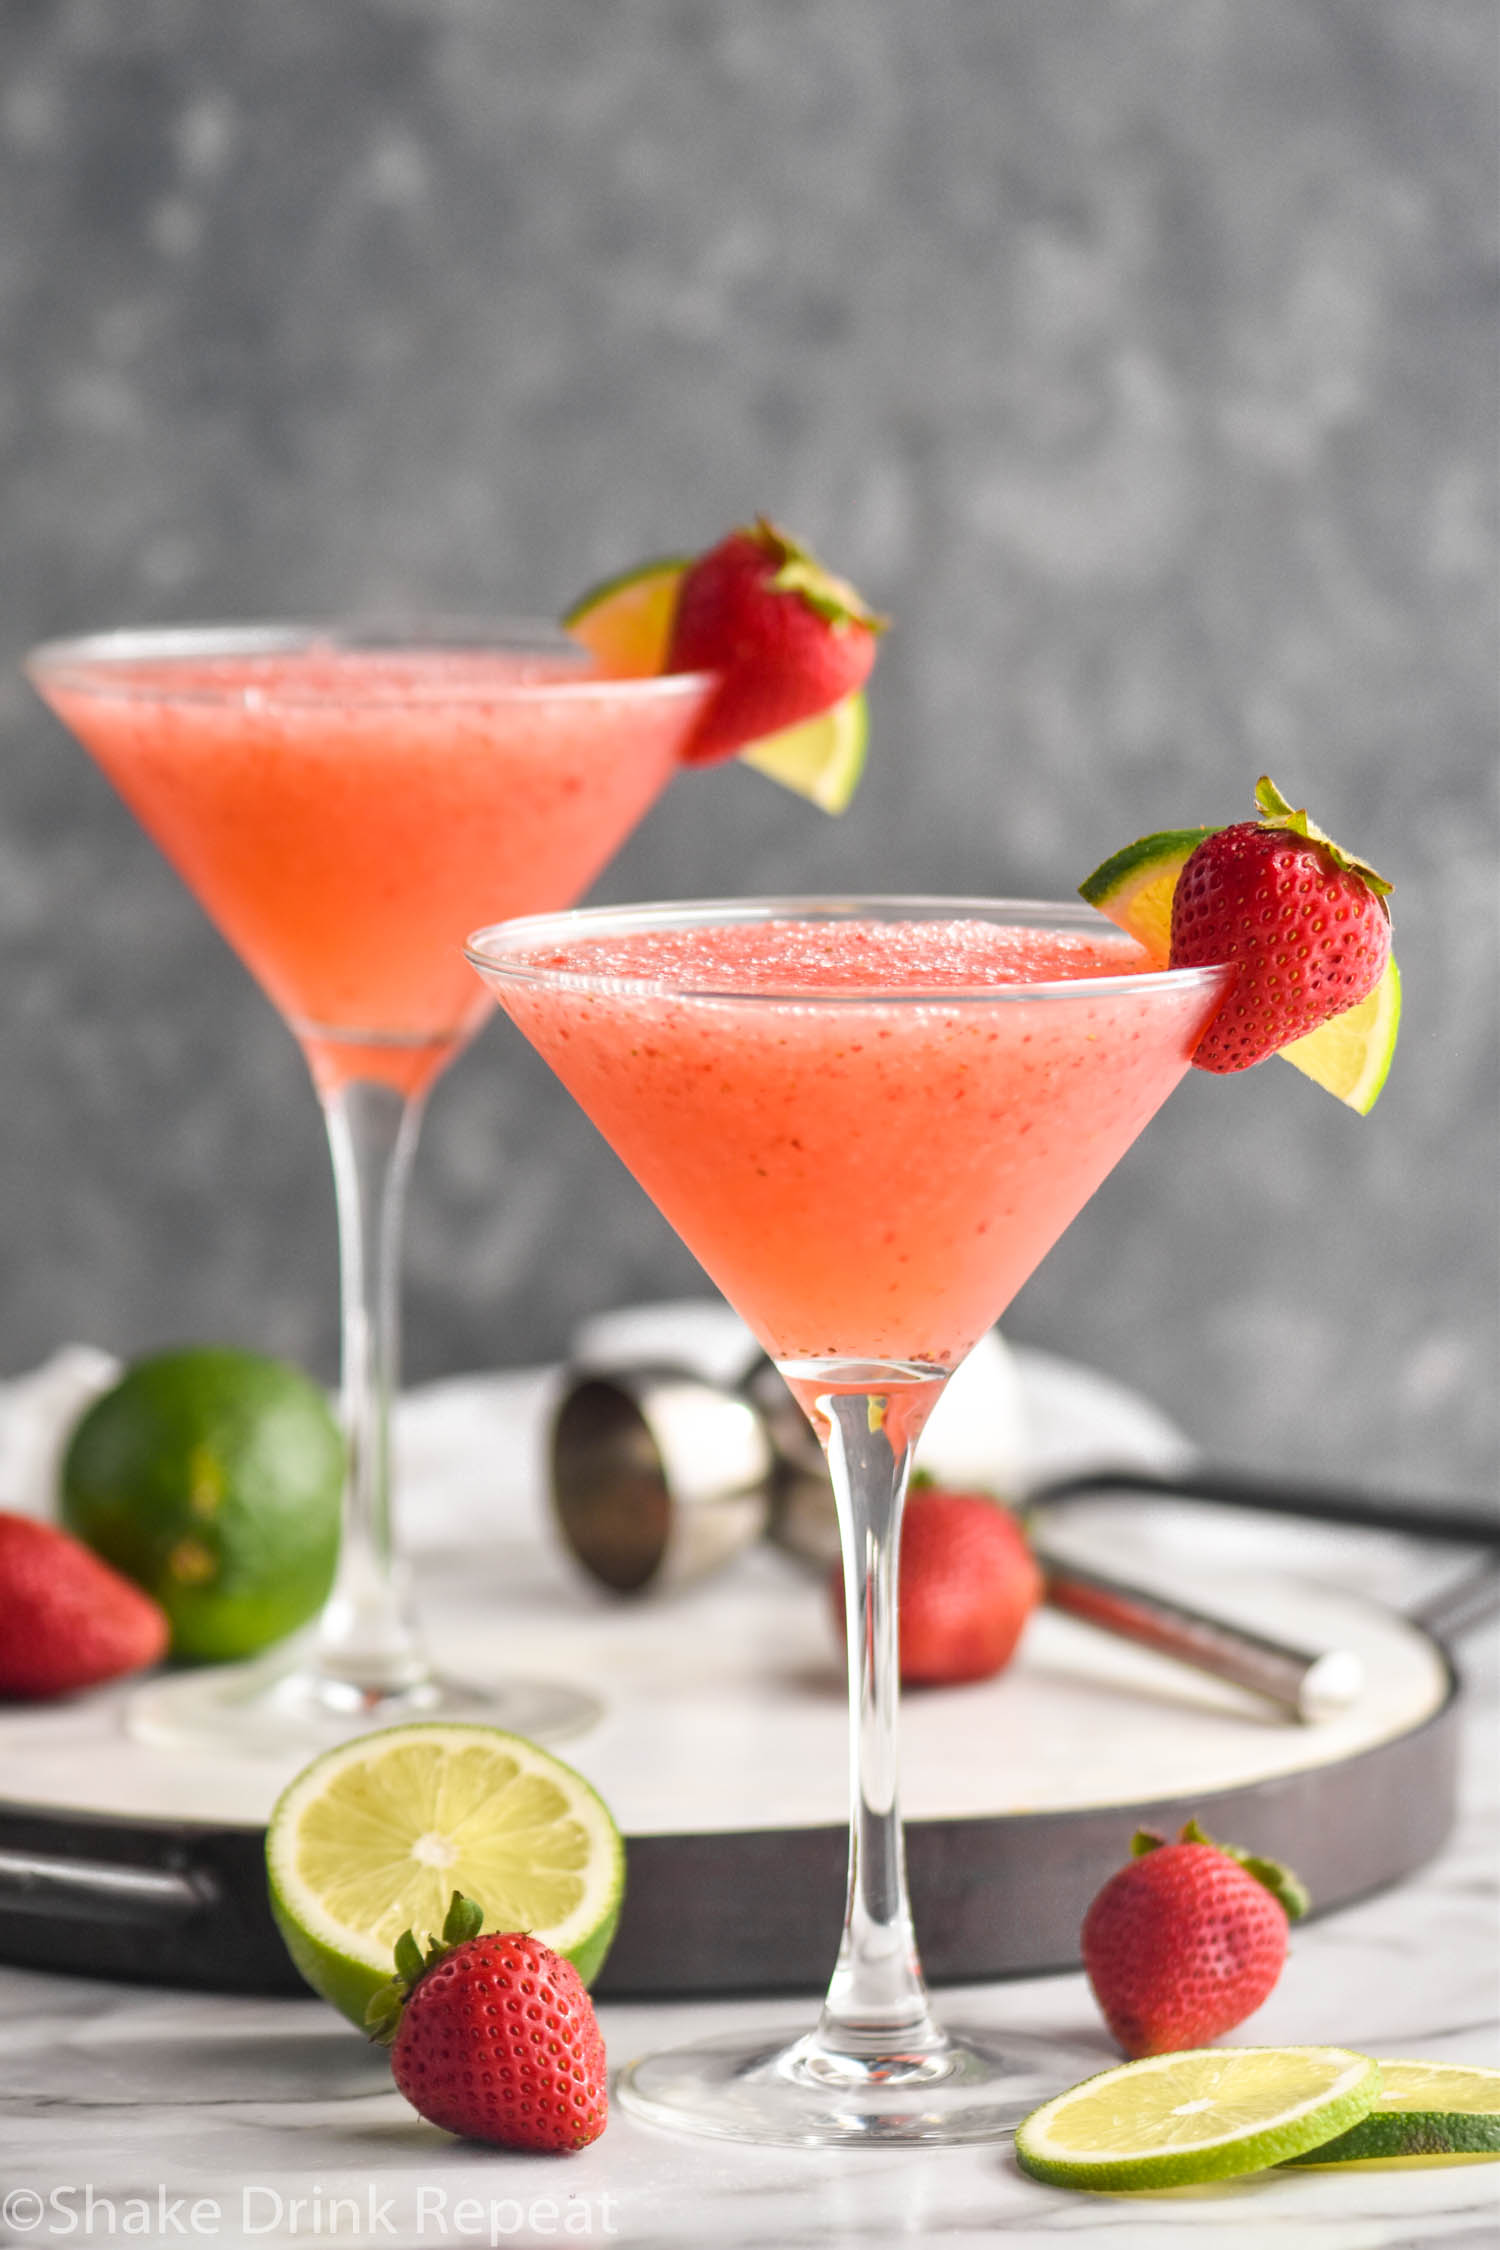 Strawberry Daiquiri - Shake Drink Repeat